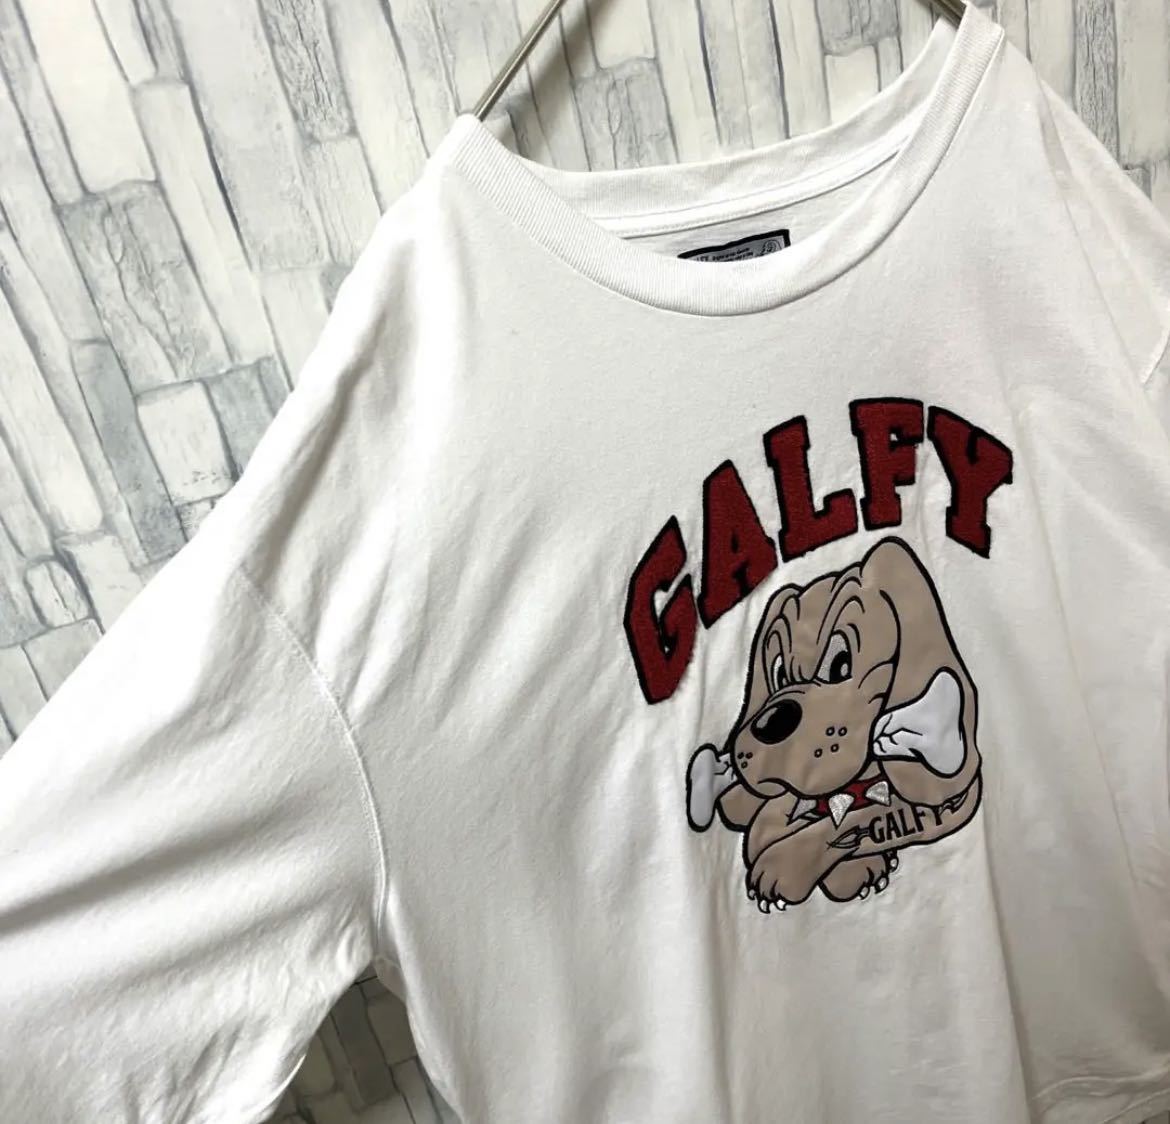 GALFY ガルフィー 半袖 Tシャツ サイズXL デカロゴ ビッグロゴ 刺繍ロゴ ワッペン ホワイト 送料無料_画像5